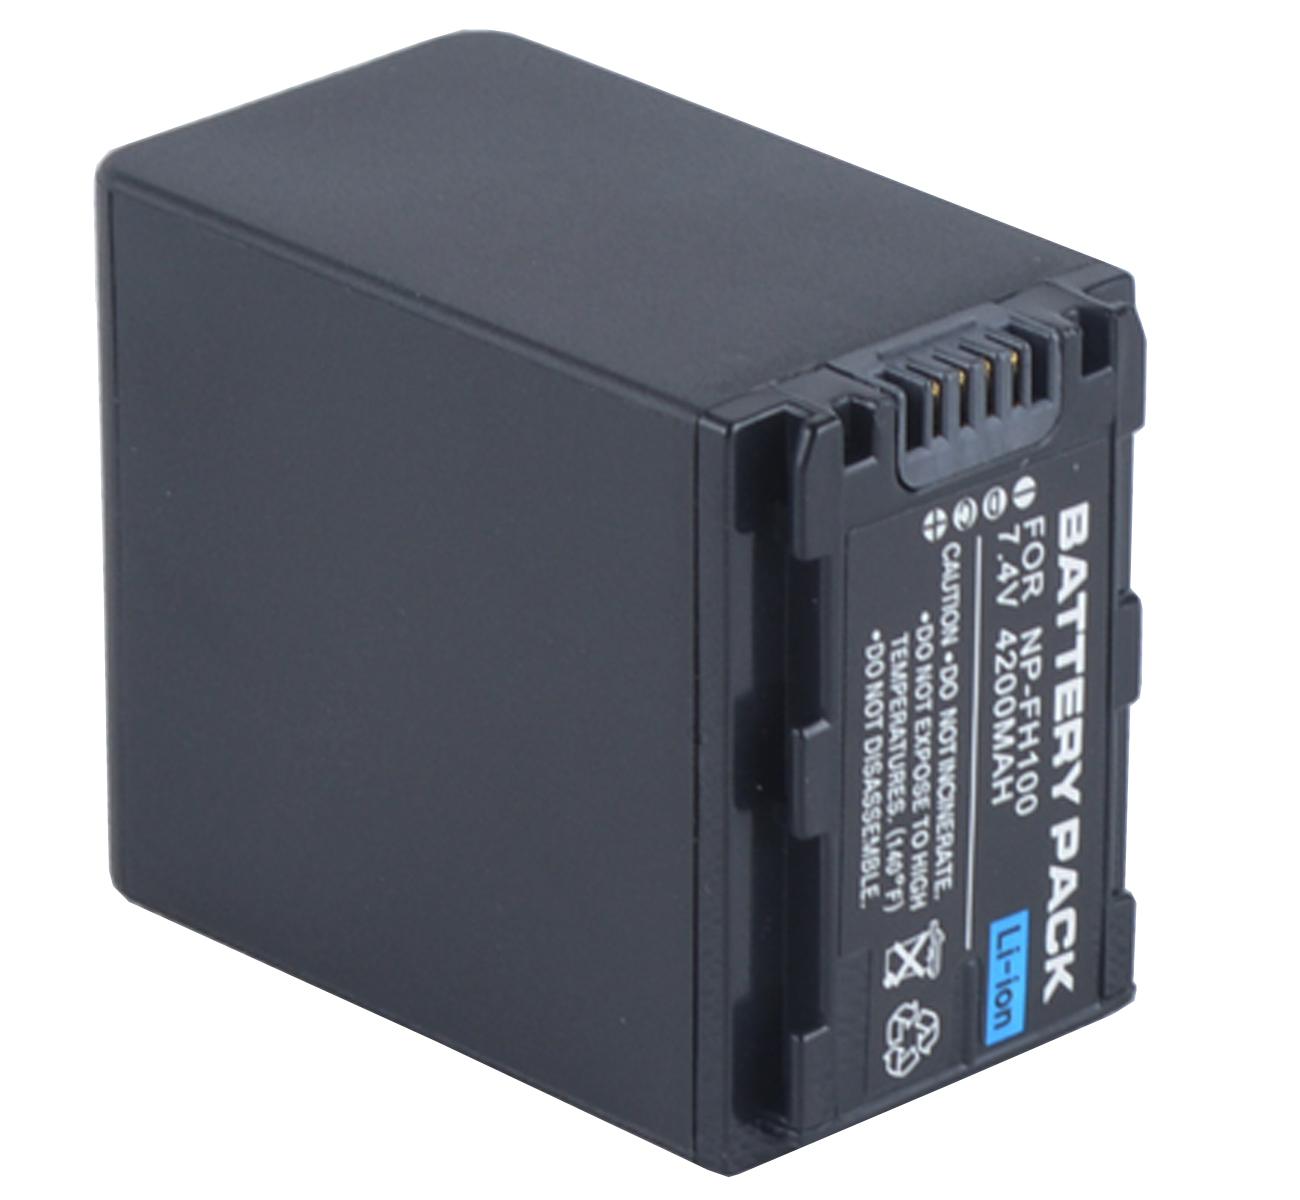 Изображение товара: Батарейный блок для видеокамеры sony HDR-UX5, HDR-UX7, HDR-UX9, HDR-UX10, HDR-UX19, HDR-UX20 Handycam